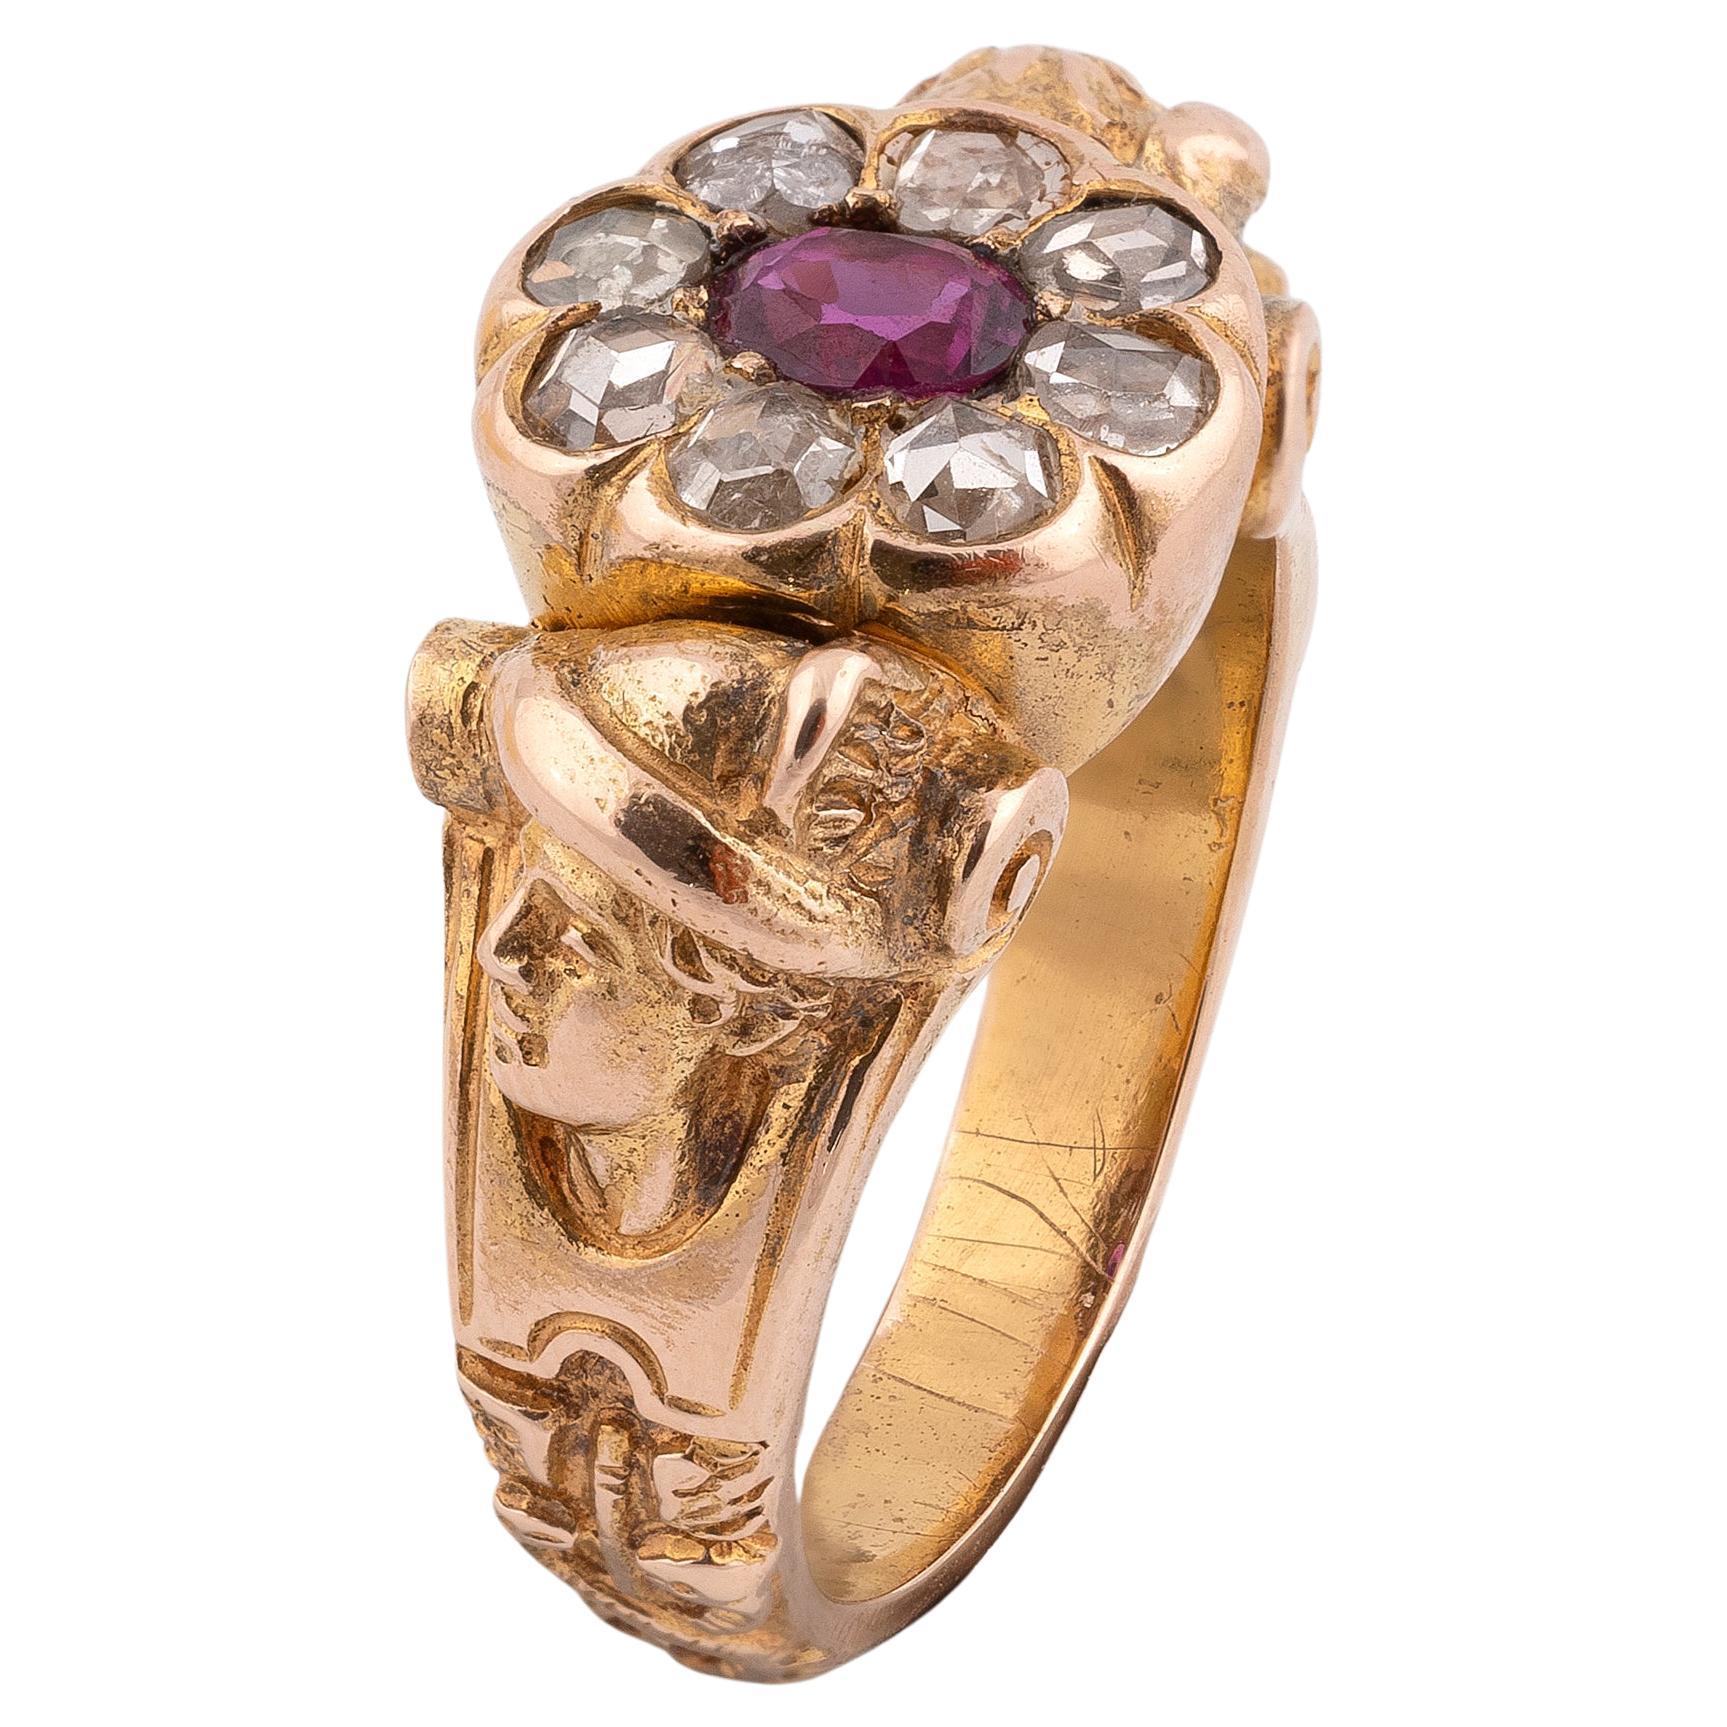 
La grappe de rubis et de diamants roses est montée sur un anneau modelé comme deux Mercure et caducée opposés.
Taille : 7
Poids : 14gr.